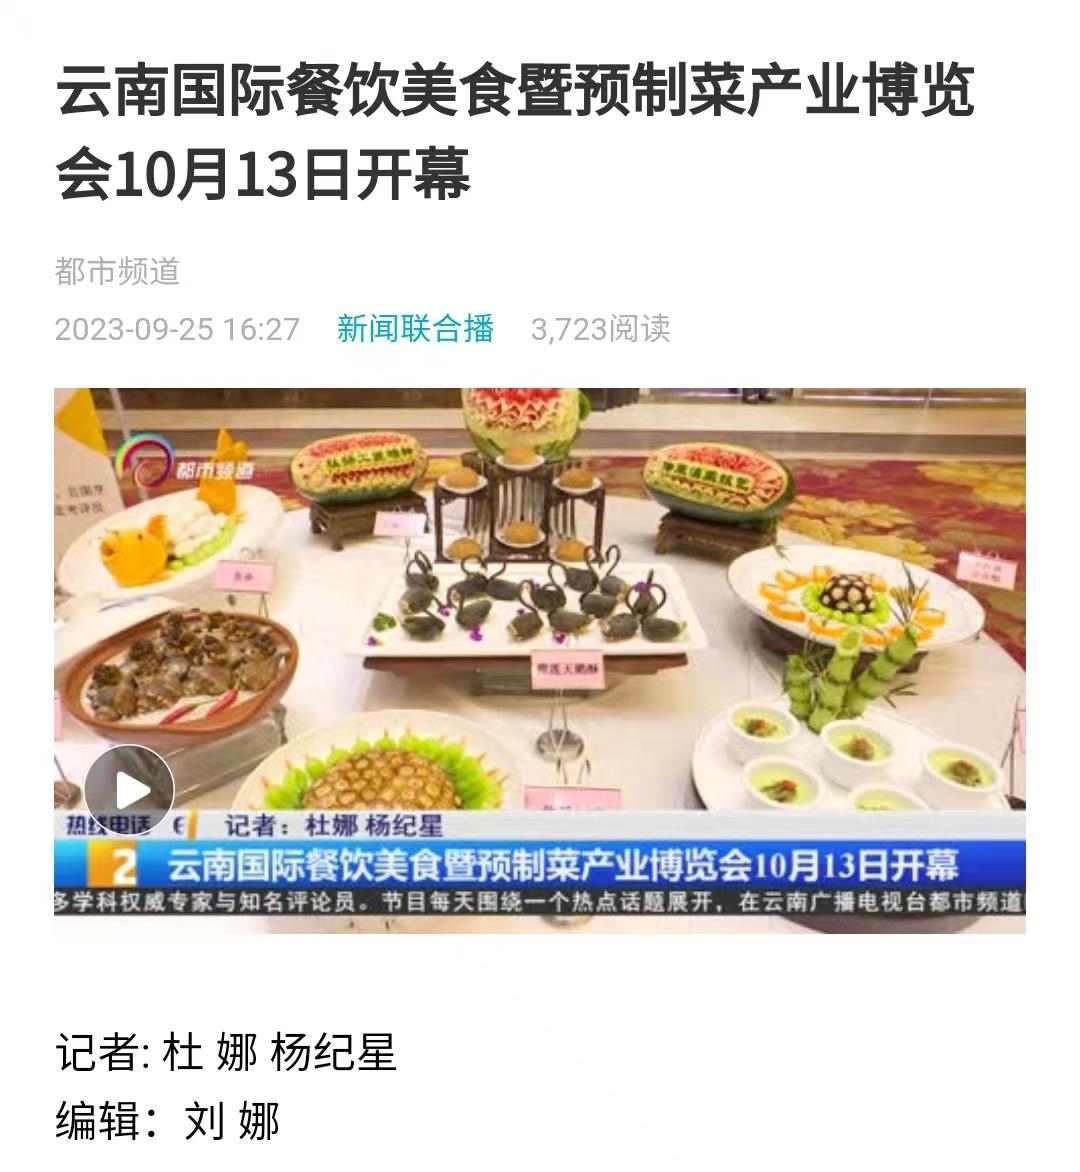 云南国际餐饮美食暨预制菜博览会将于10月13日启幕